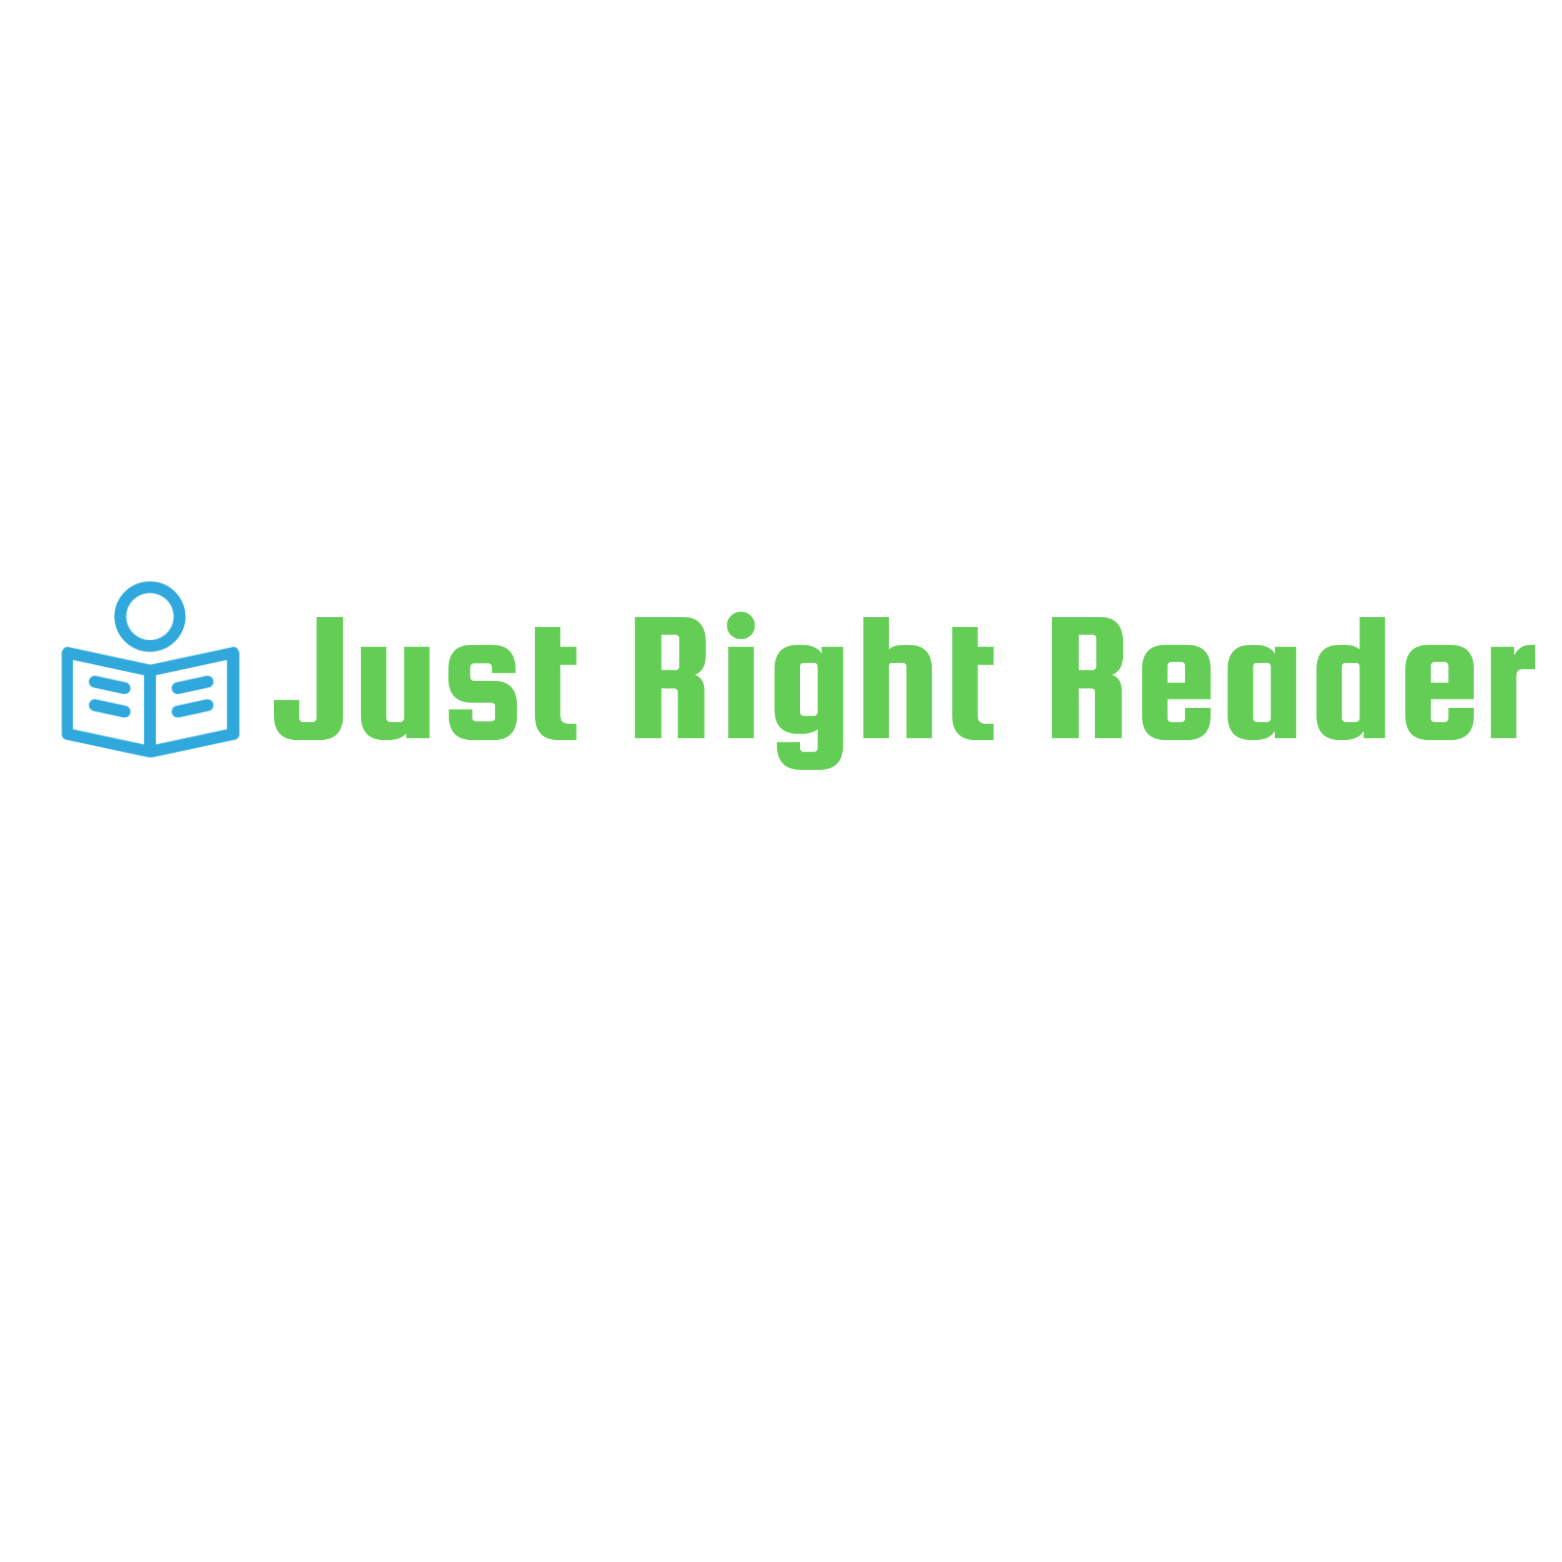 Just Right Reader